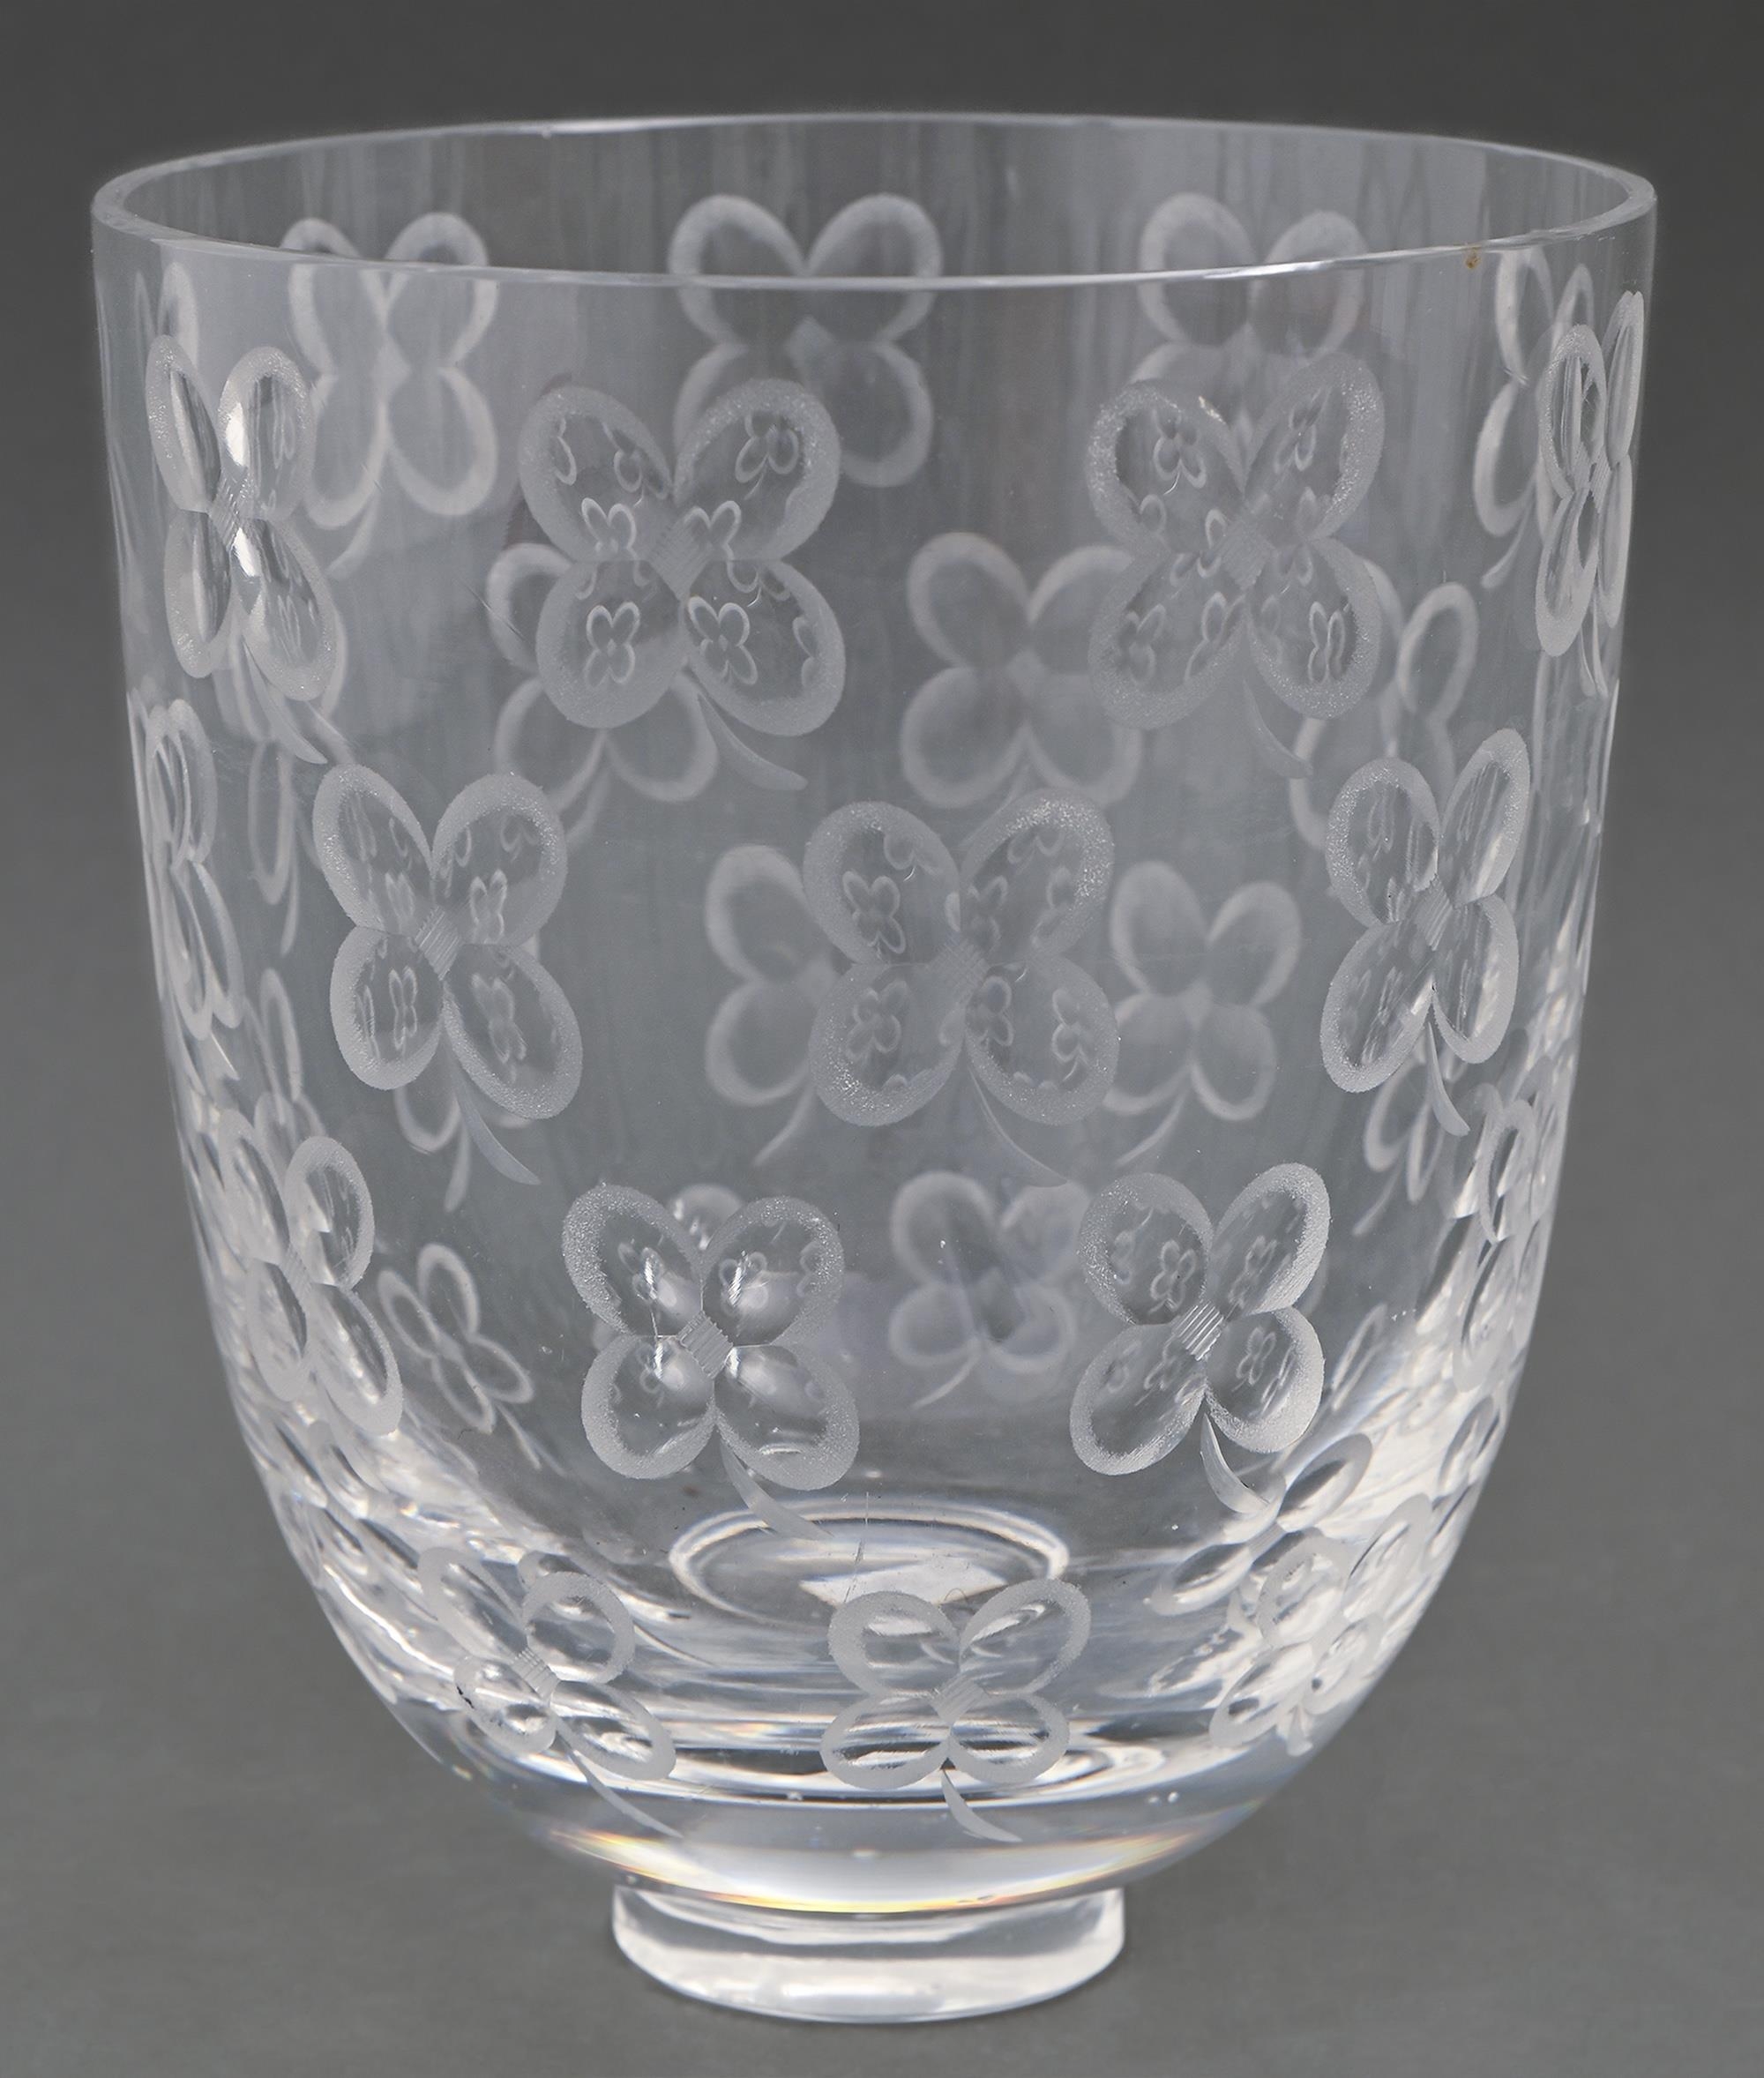 An Orrefors  cut glass vase of four leaf clover design,  18cm h